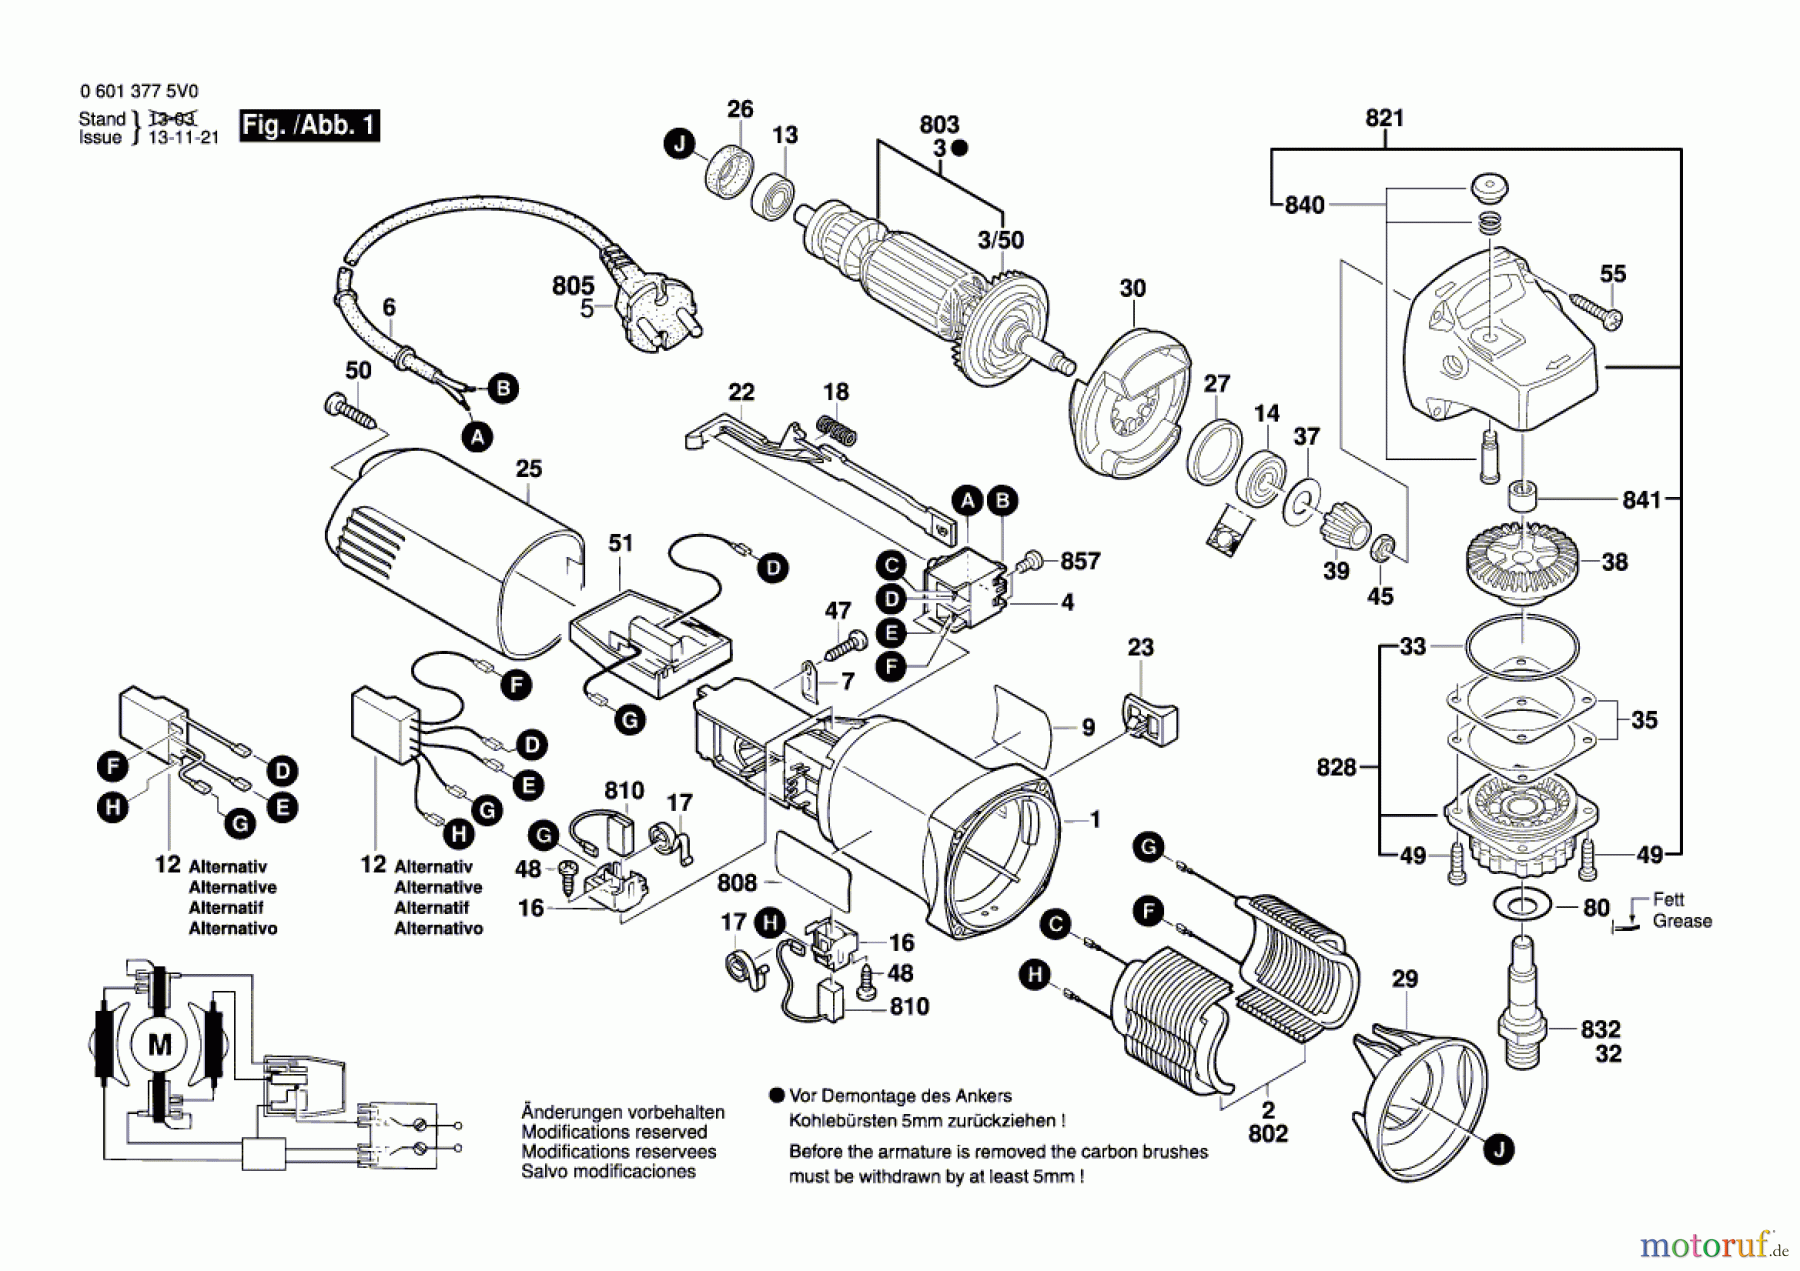  Bosch Werkzeug Winkelschleifer GWS 8-115 C Seite 1